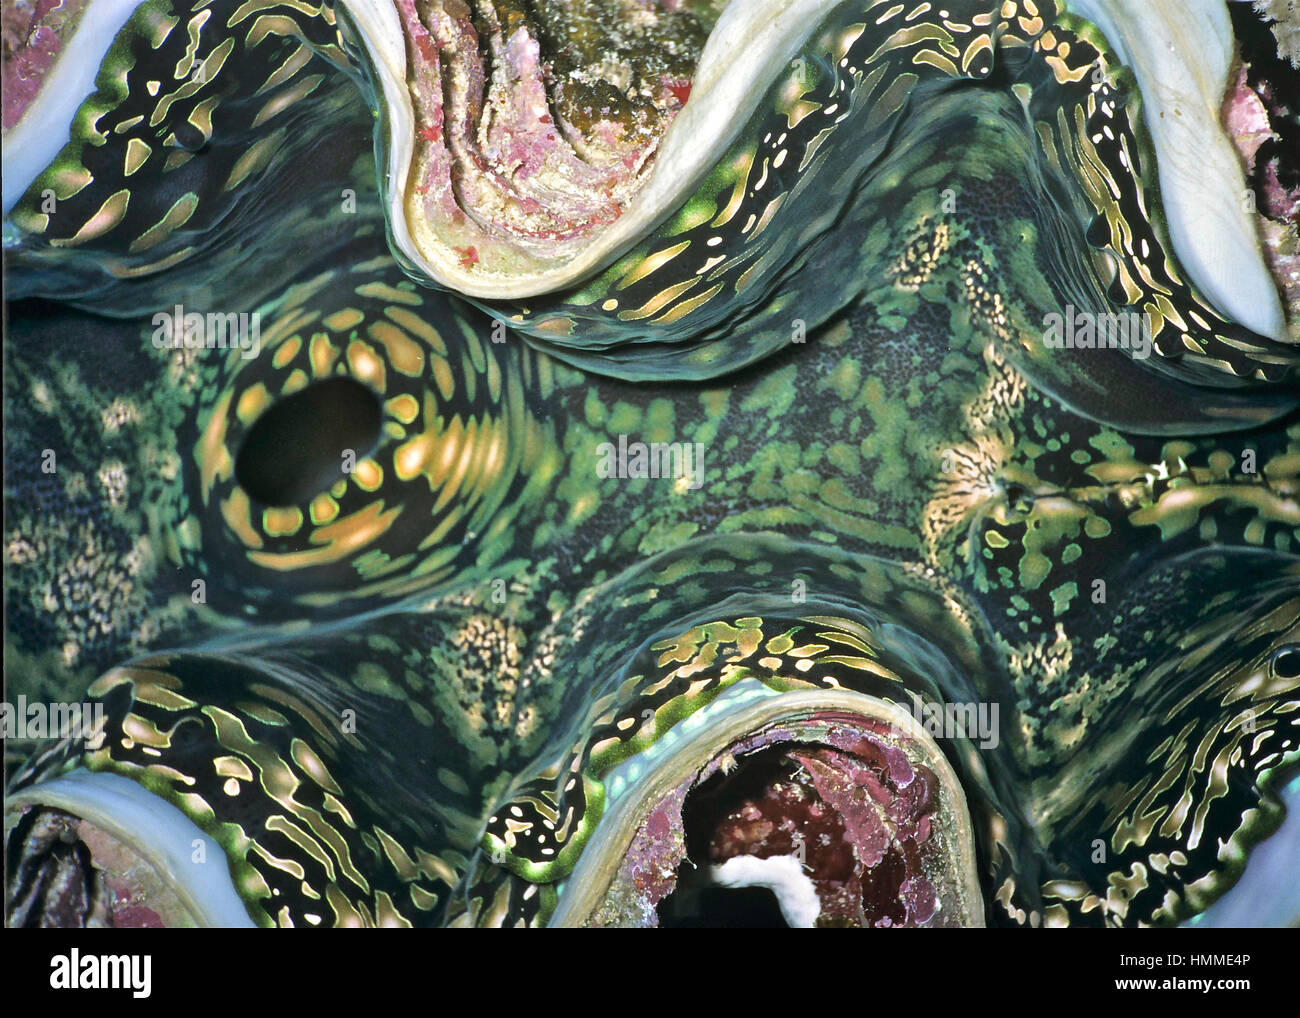 Dettagli da un gigante clam (Tridacna gigas) che mostra il pattern colorati formata da colonie di relazione simbiotica dinoflagellato alghe nei molluschi mantello. Foto Stock